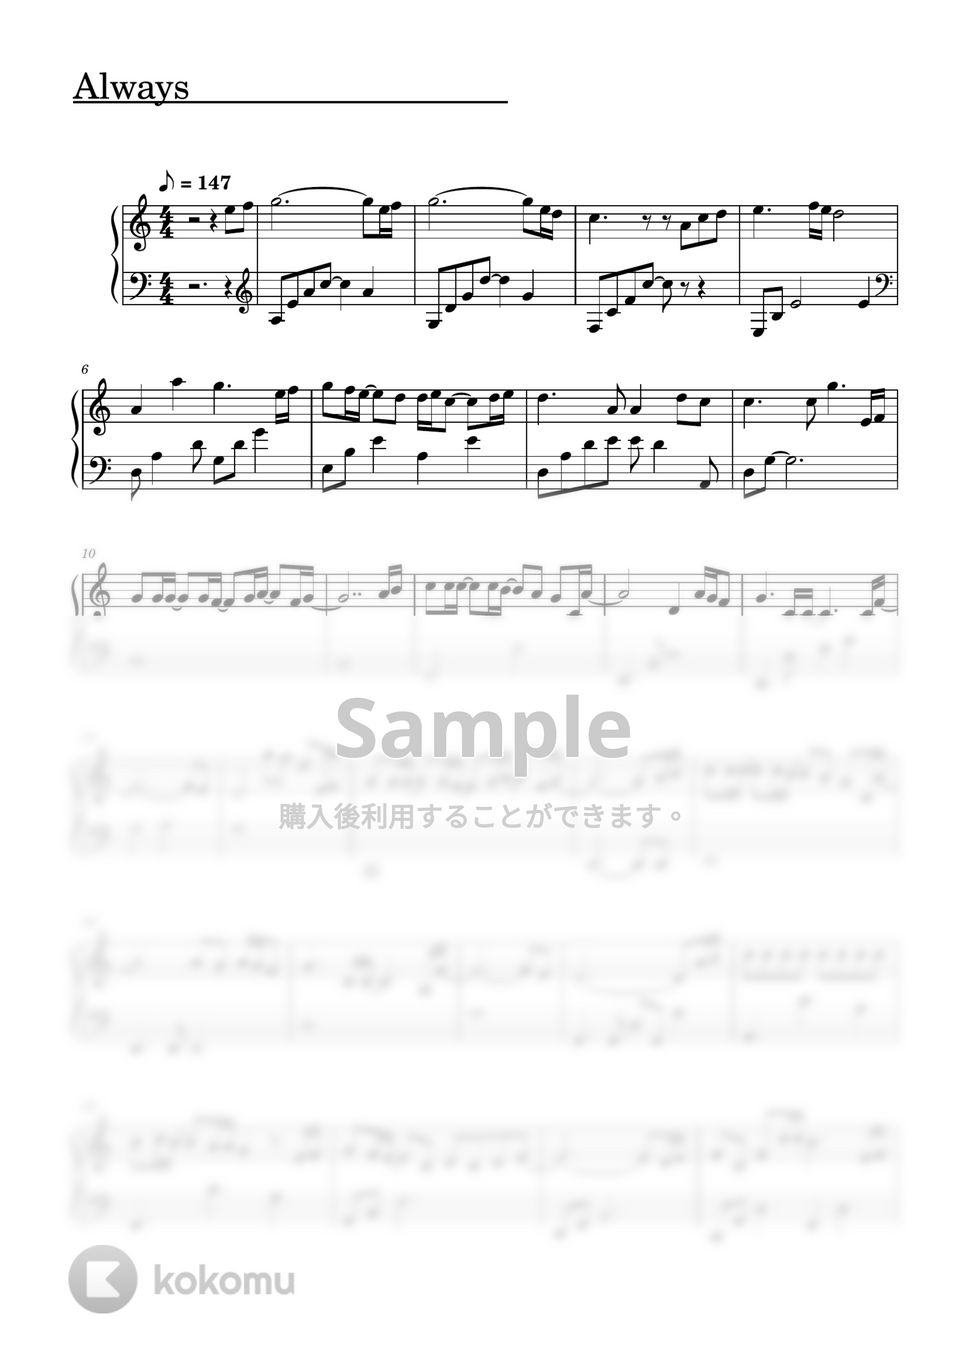 ジェル(すとぷり) - Always (ピアノソロ譜) by 萌や氏